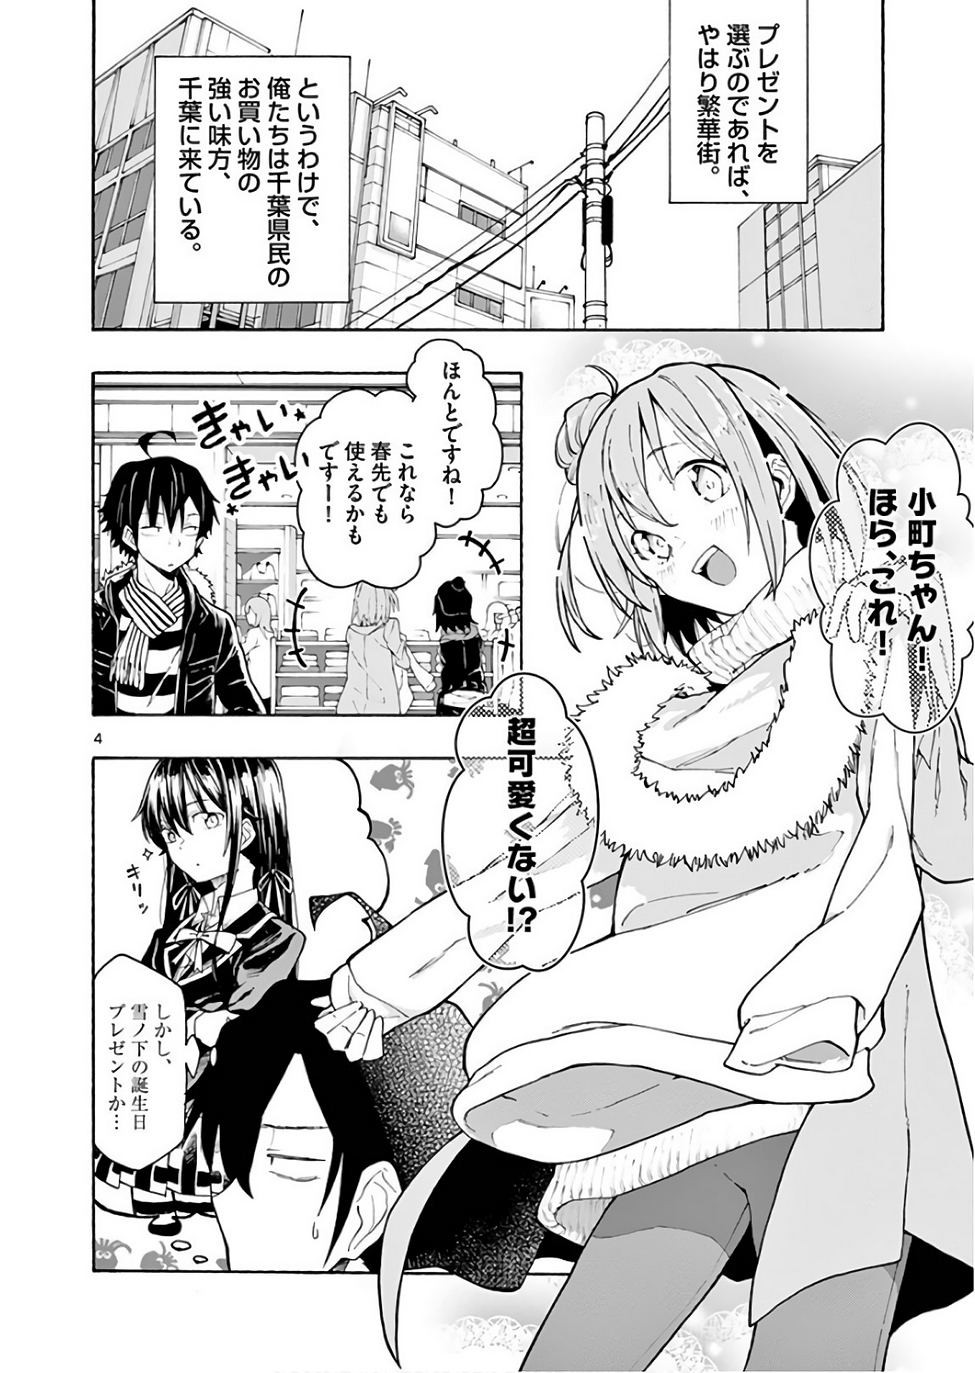 Yahari Ore no Seishun Rabukome wa Machigatte Iru. @ Comic - Chapter 74 - Page 4